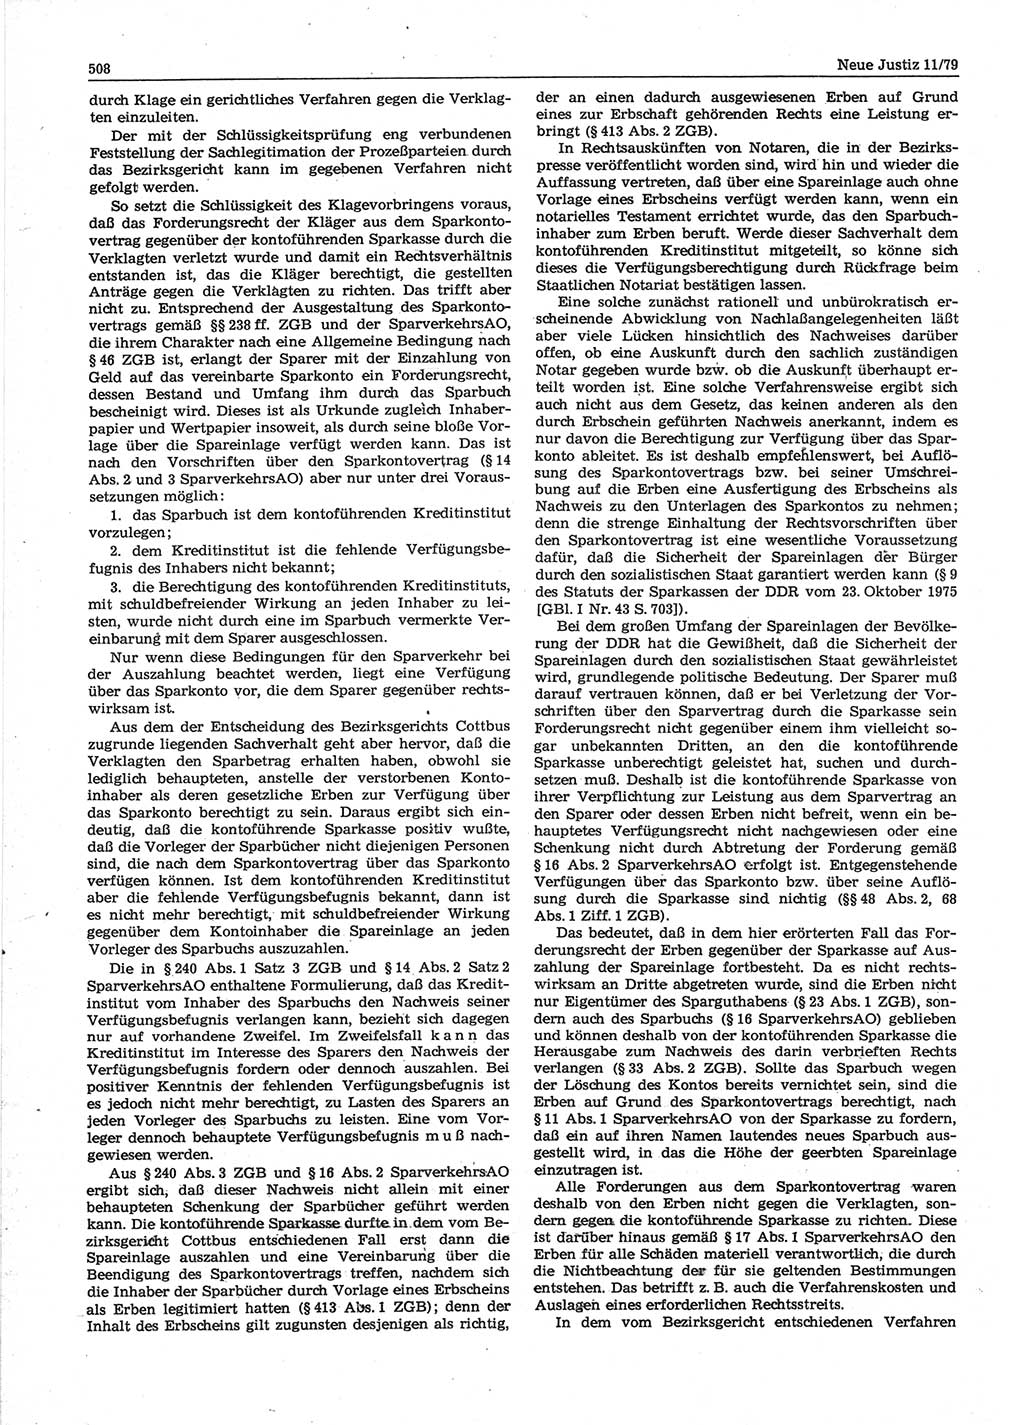 Neue Justiz (NJ), Zeitschrift für sozialistisches Recht und Gesetzlichkeit [Deutsche Demokratische Republik (DDR)], 33. Jahrgang 1979, Seite 508 (NJ DDR 1979, S. 508)